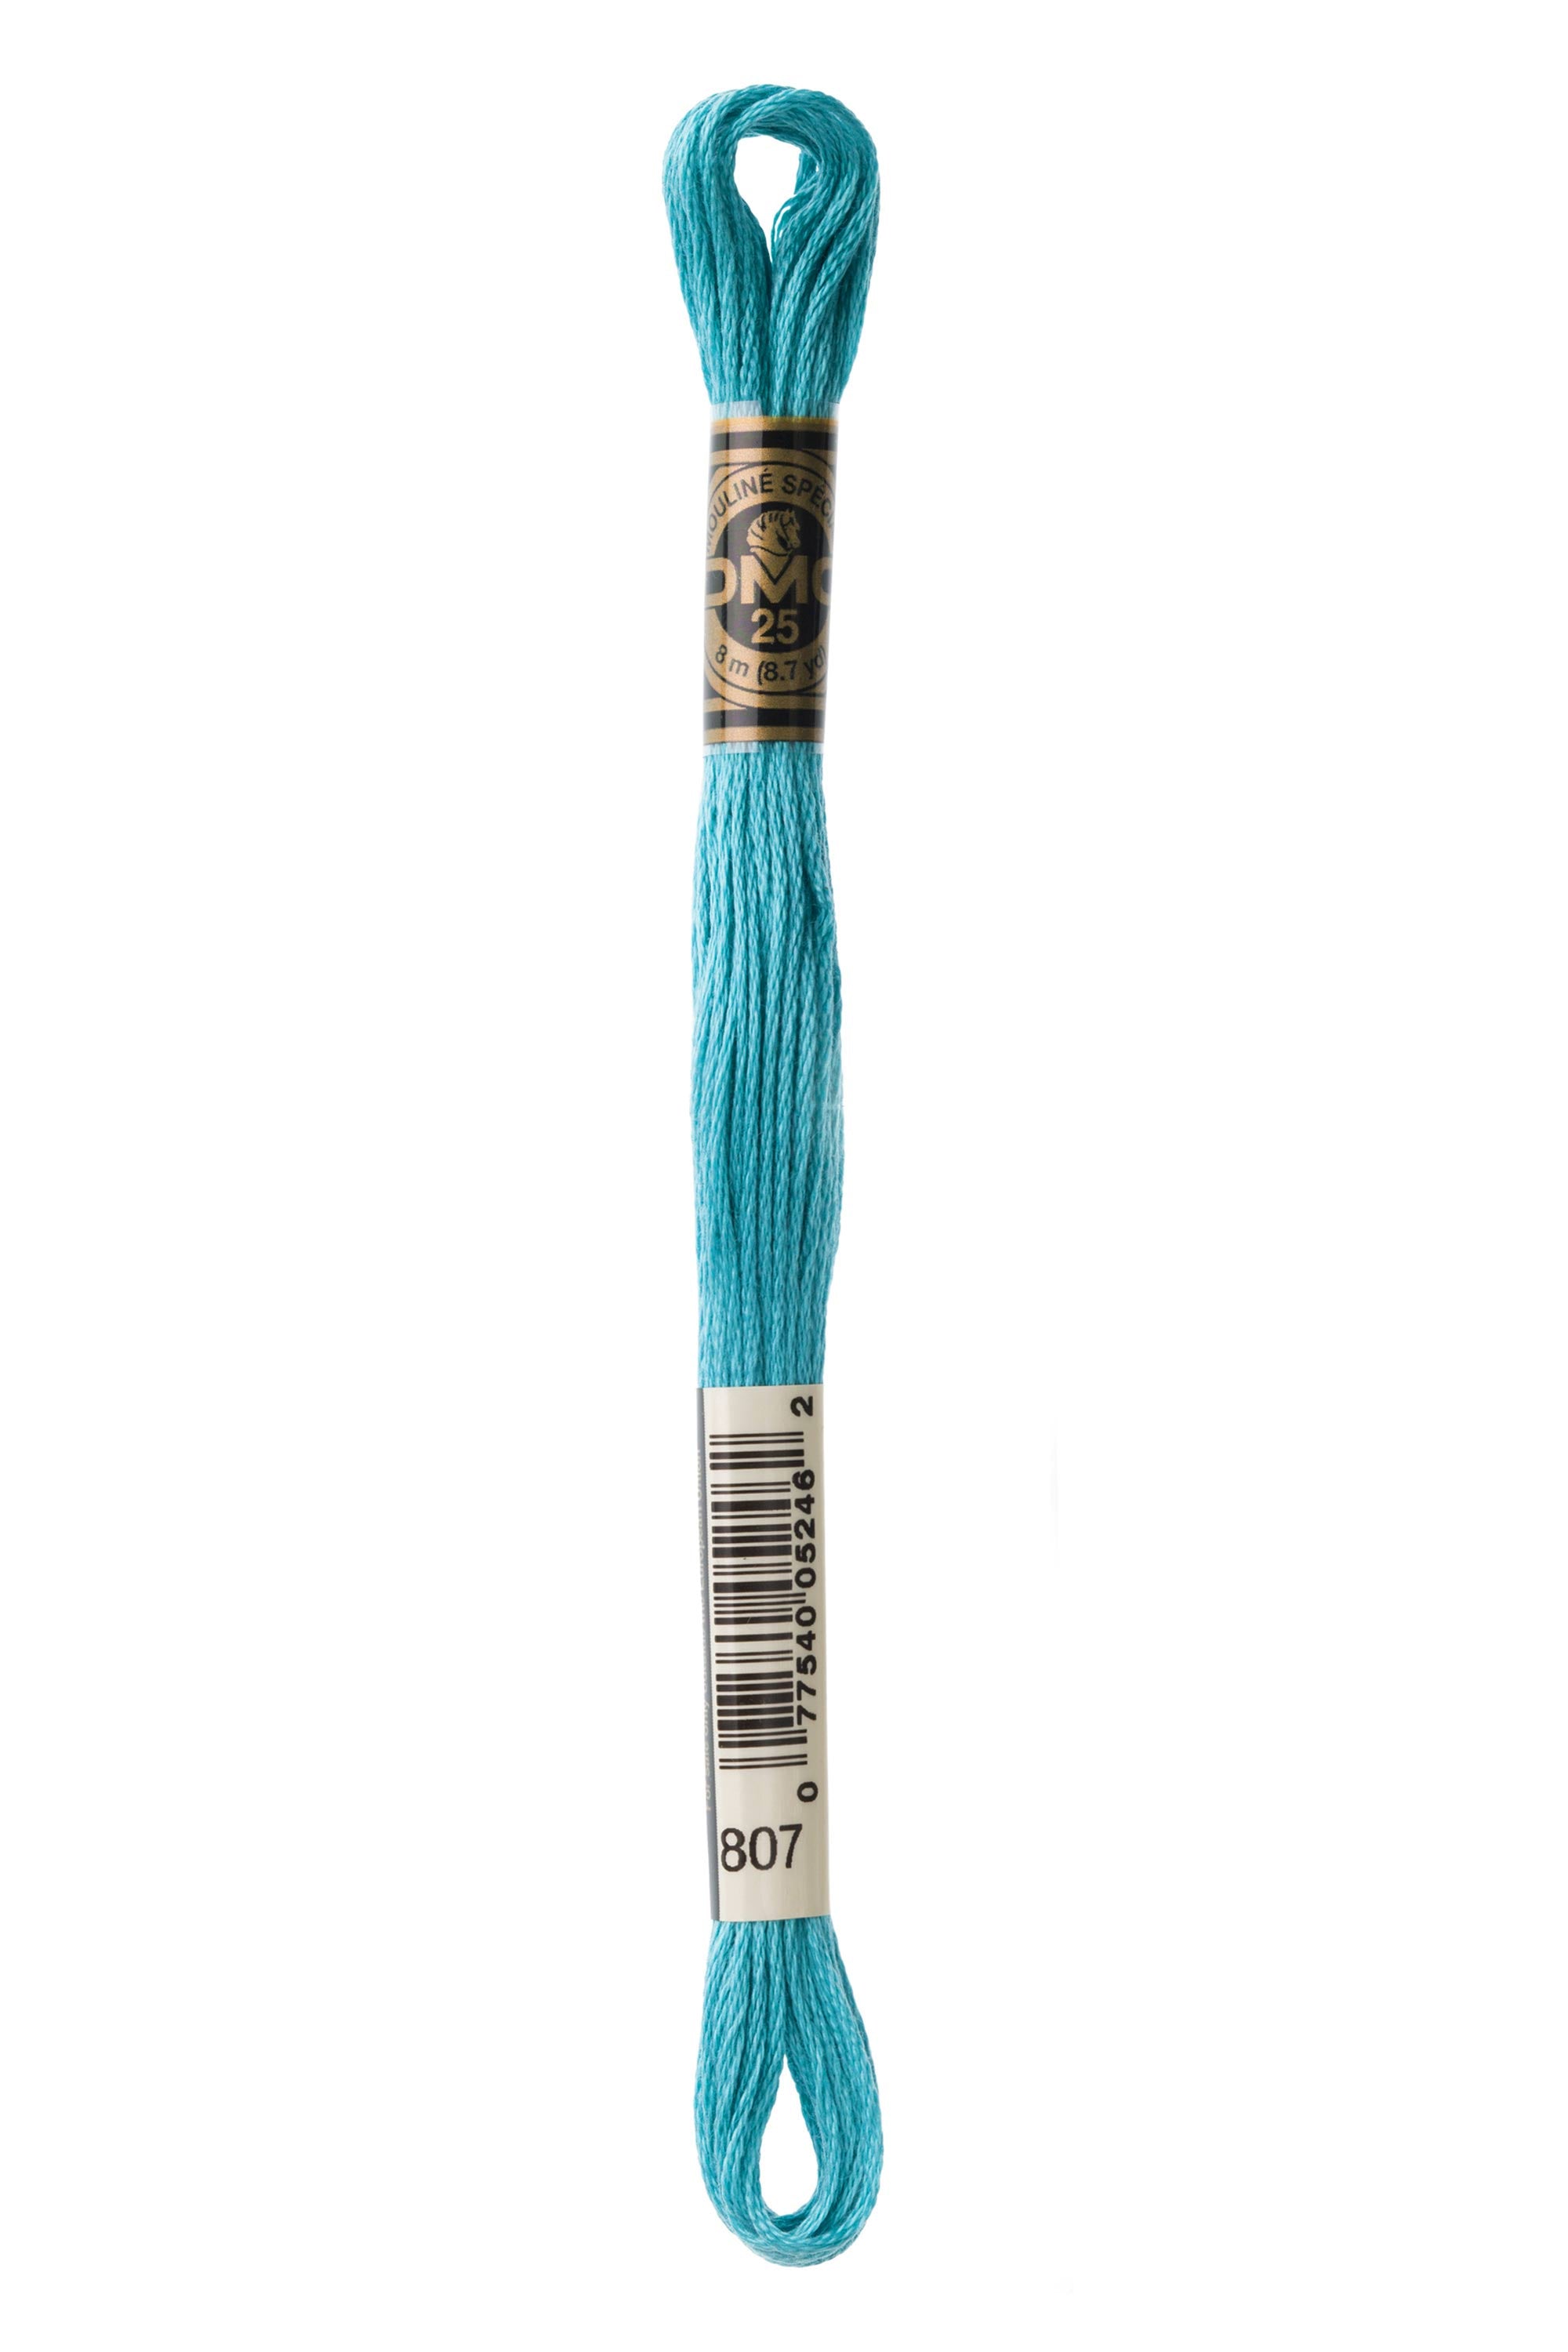 DMC Satin S820: Very Dark Royal Blue (6-strand floss)